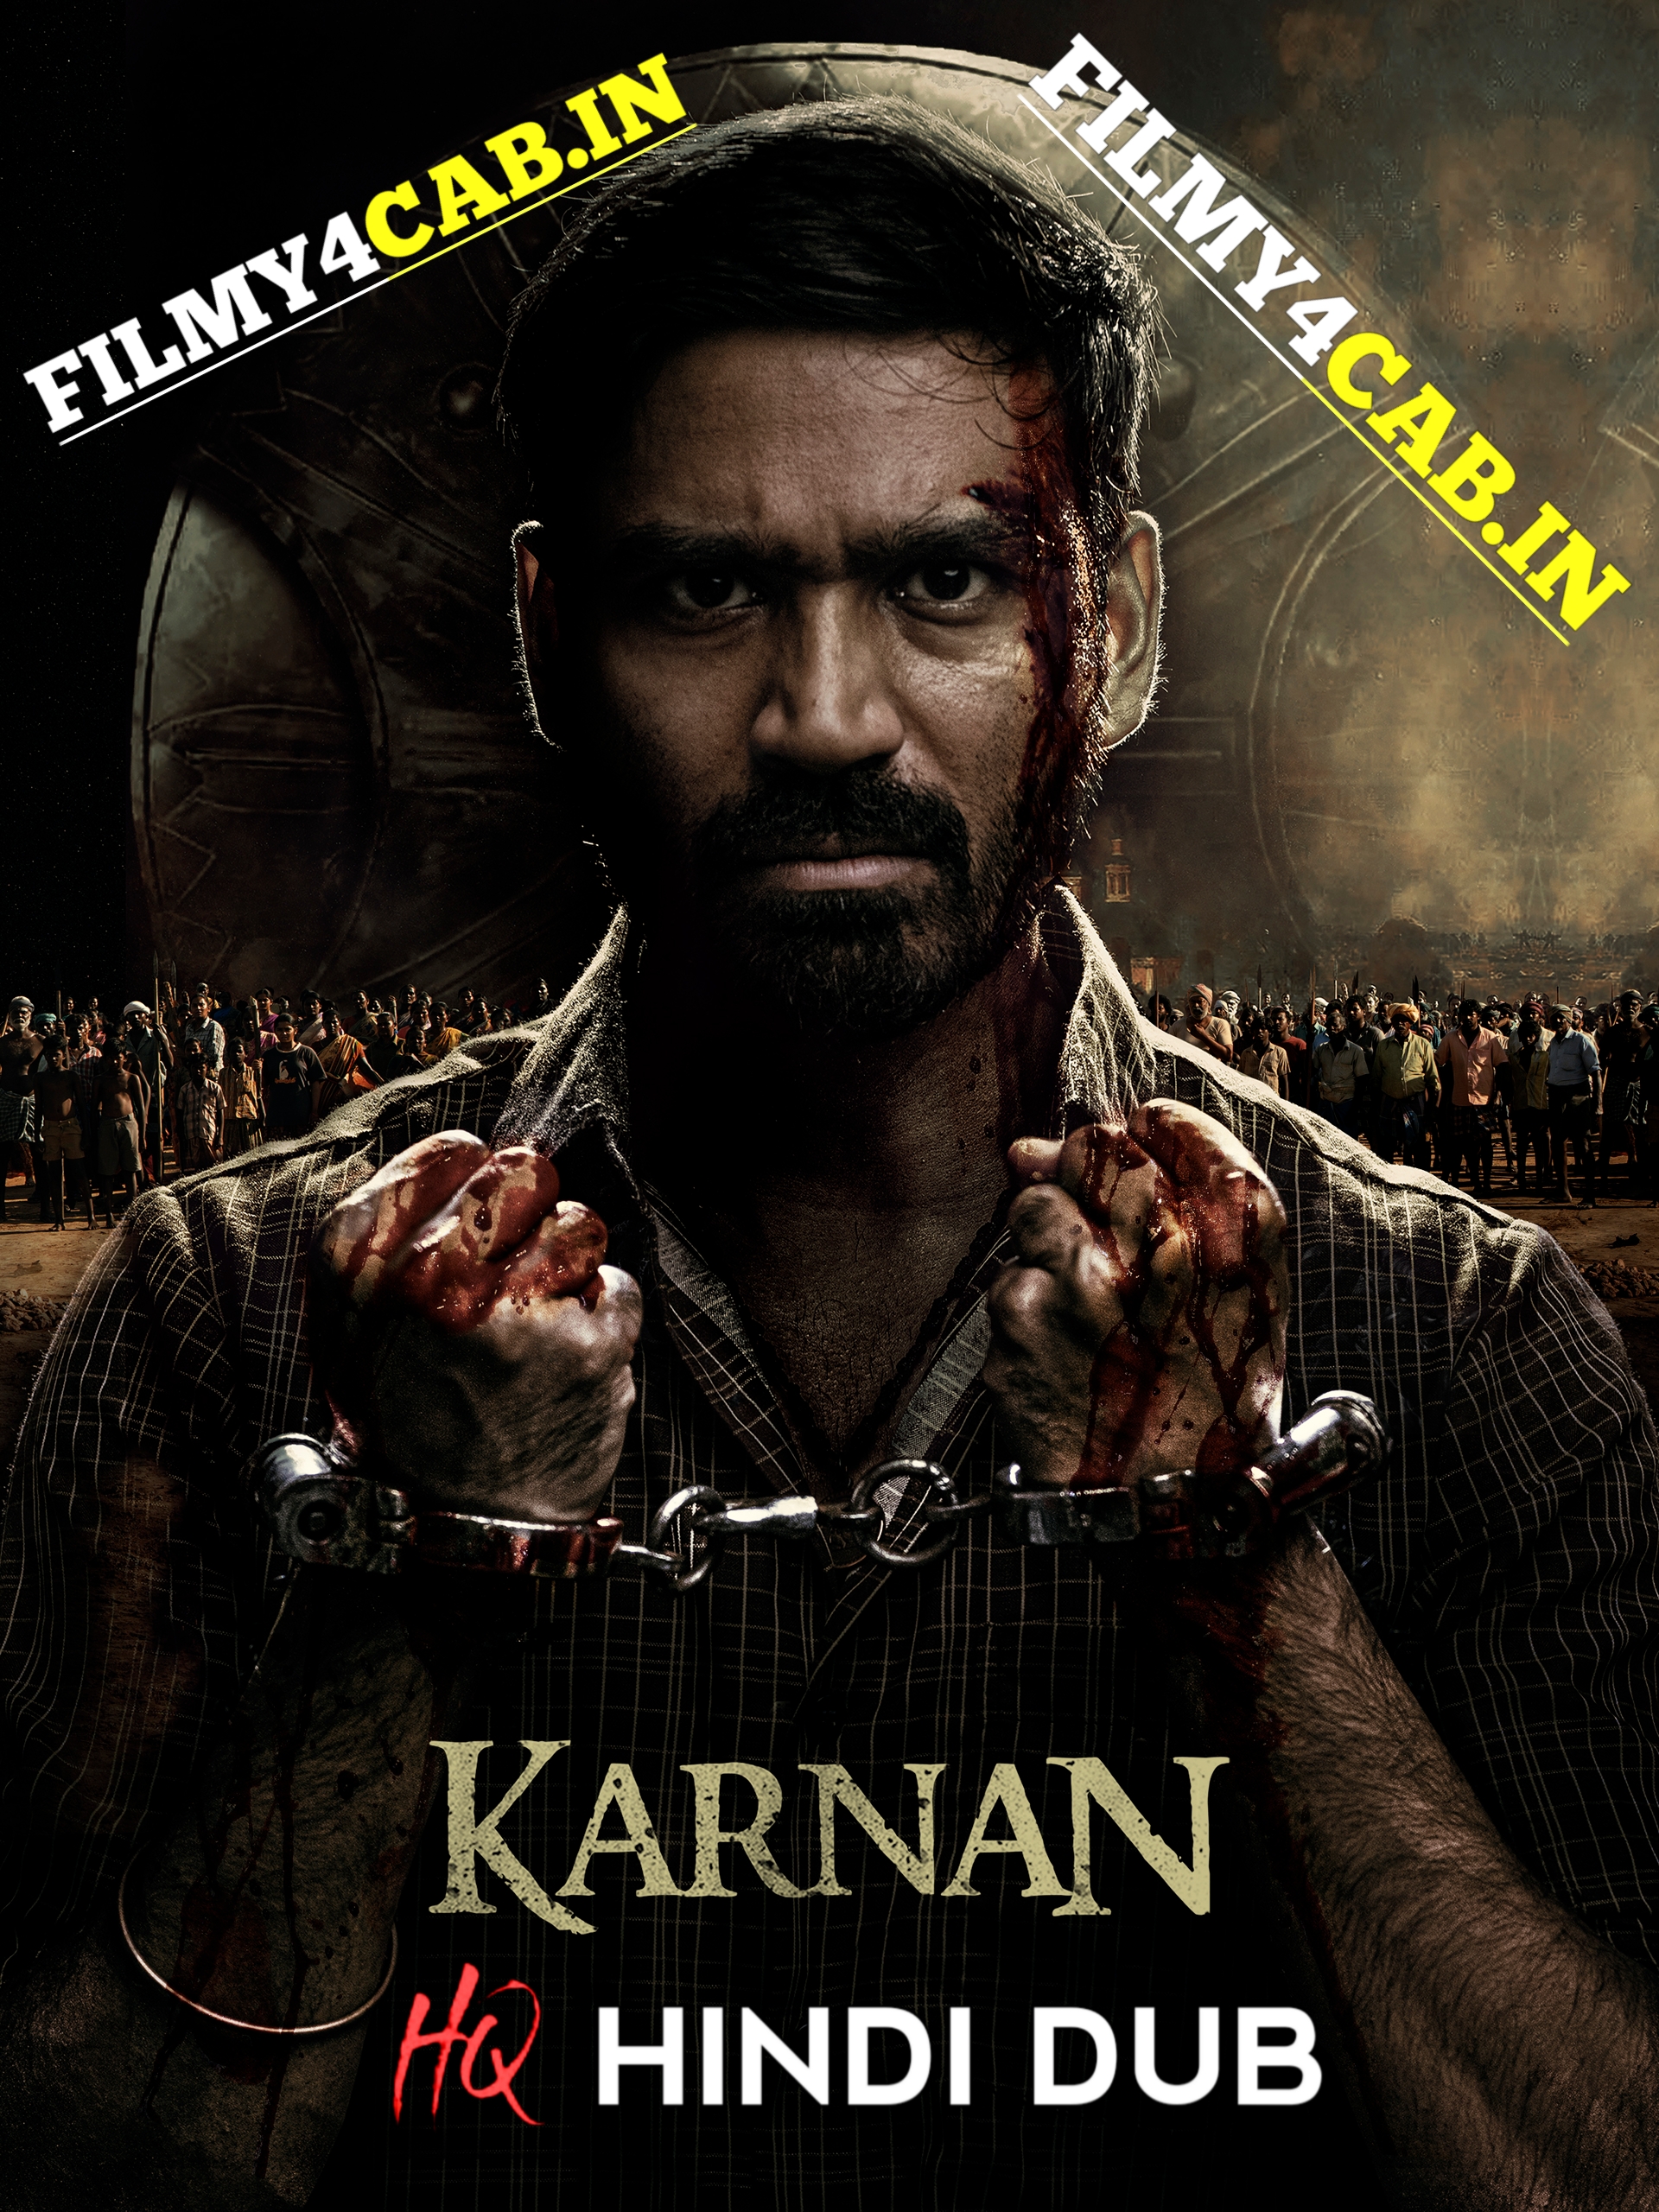 Karnan (2022) New South HQ Hindi Dubbed Trailer